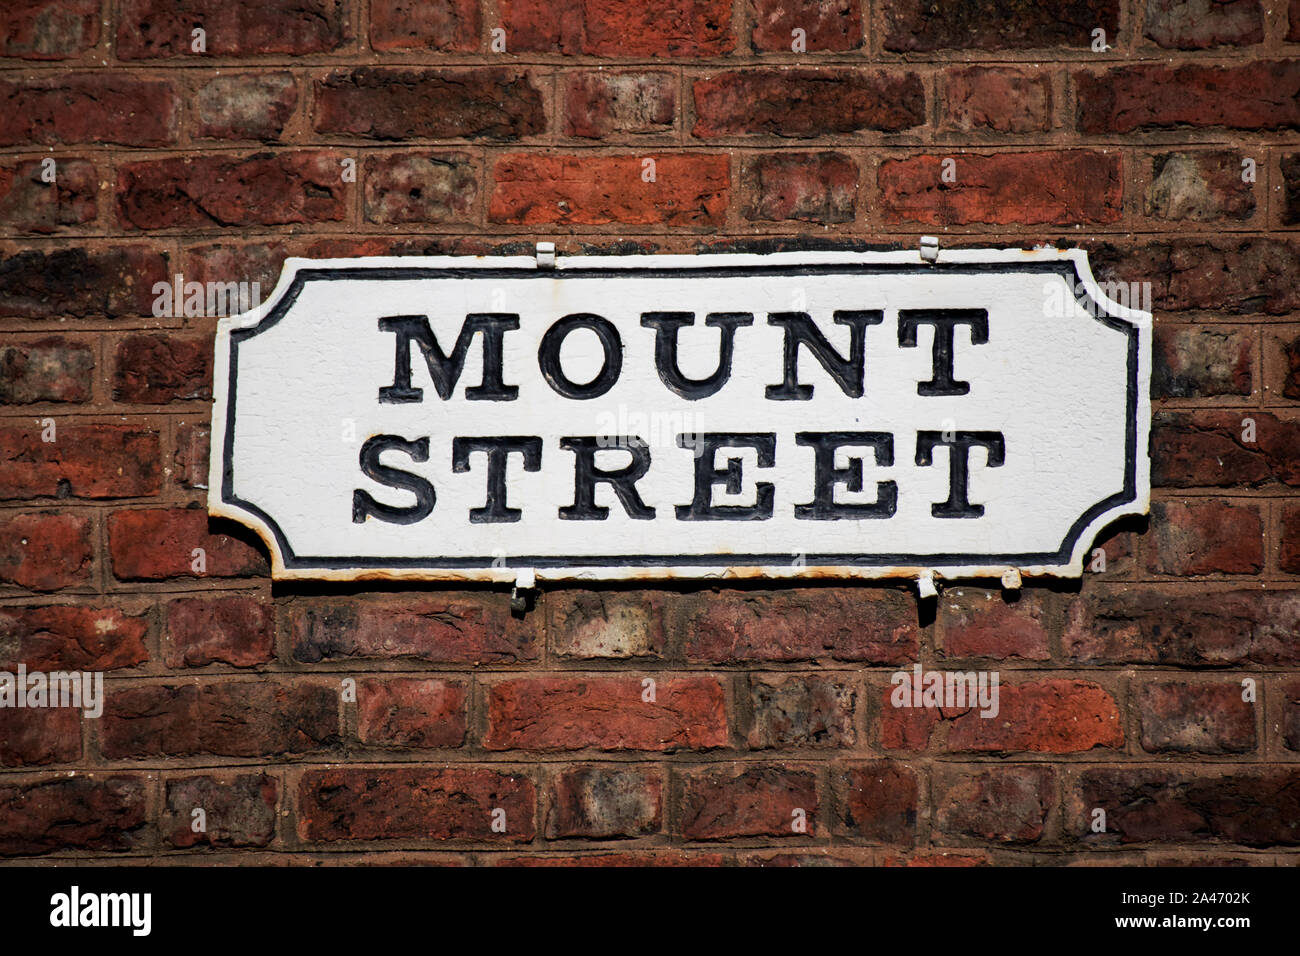 Mount Street nom de rue plaque constructeur en brique rouge géorgien de Liverpool Angleterre UK Banque D'Images